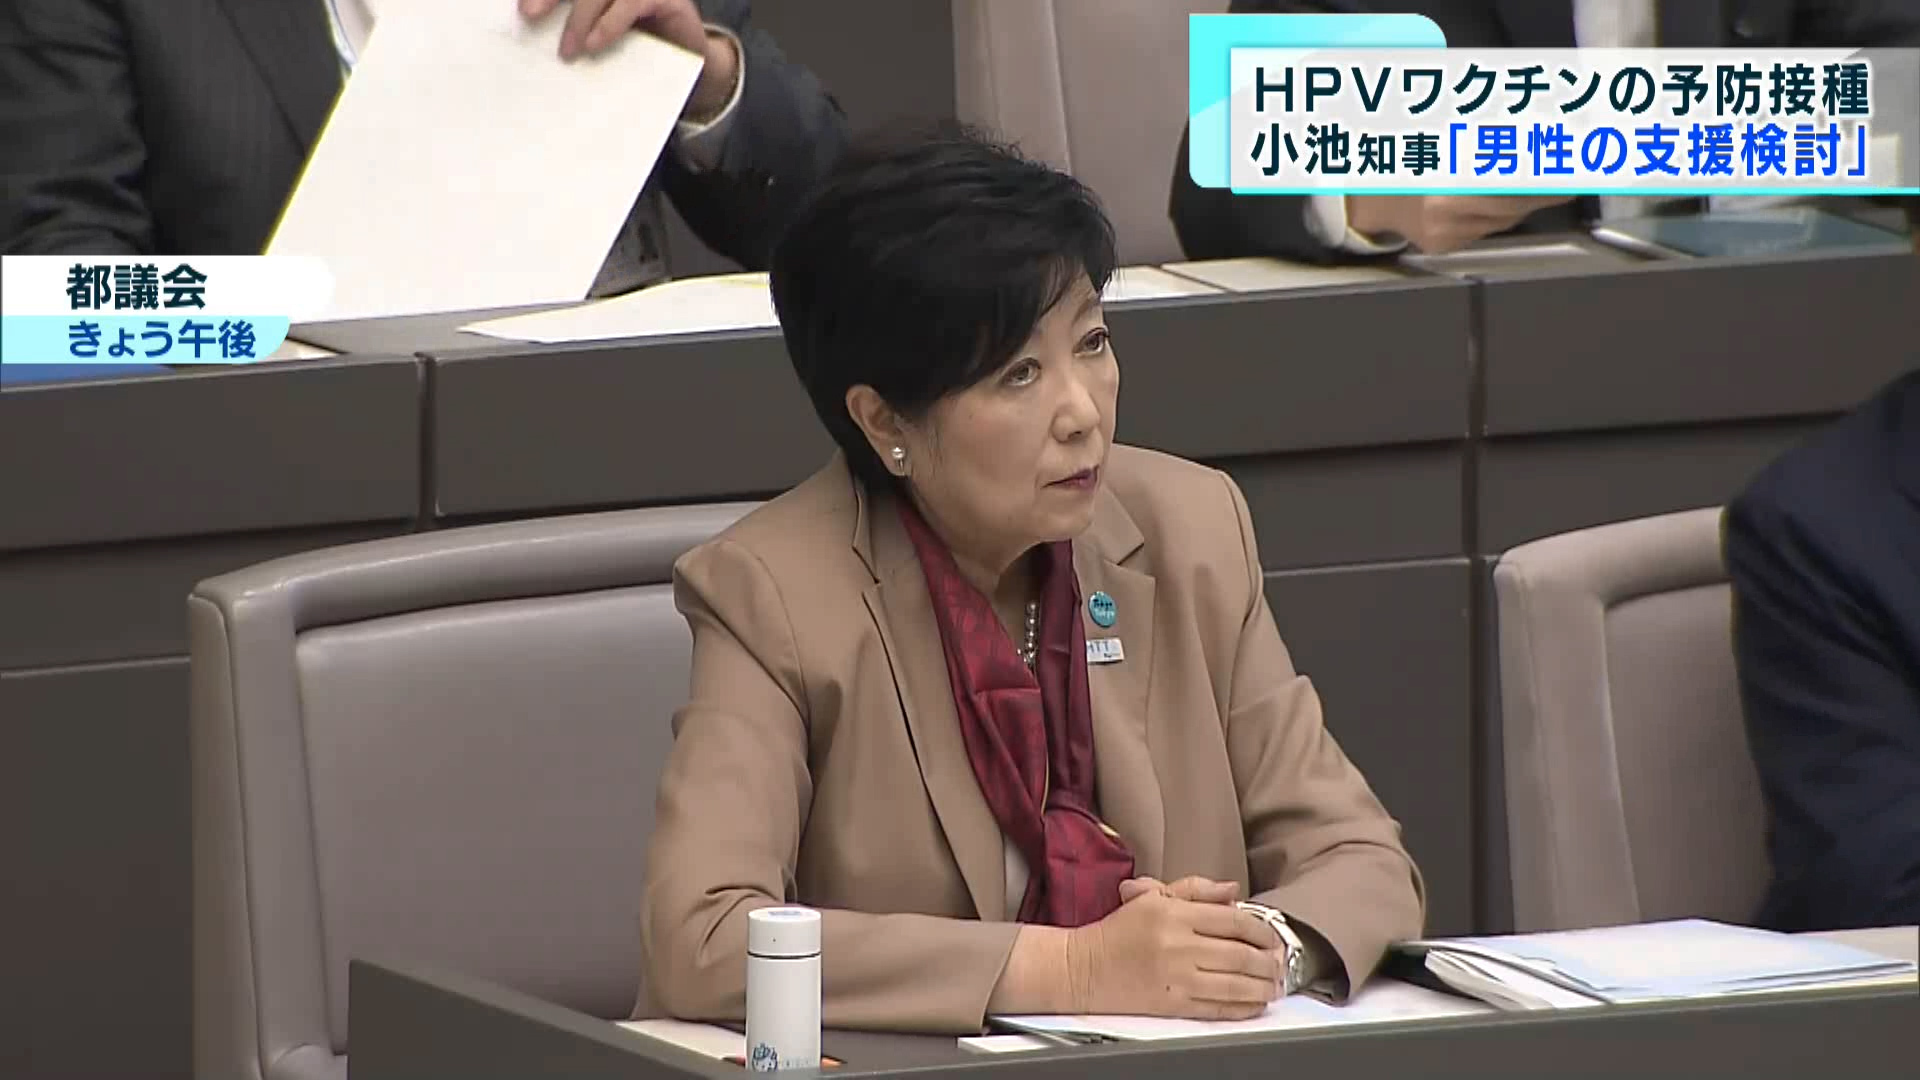 東京都が男性へのHPVワクチン接種を支援へ。子宮頸がんなどの予防接種に用いられるHPVワクチンについて、小池知事は9月26日の都議会で女性だけではなく、男性への接種の支援を検討すると明らかにしました。